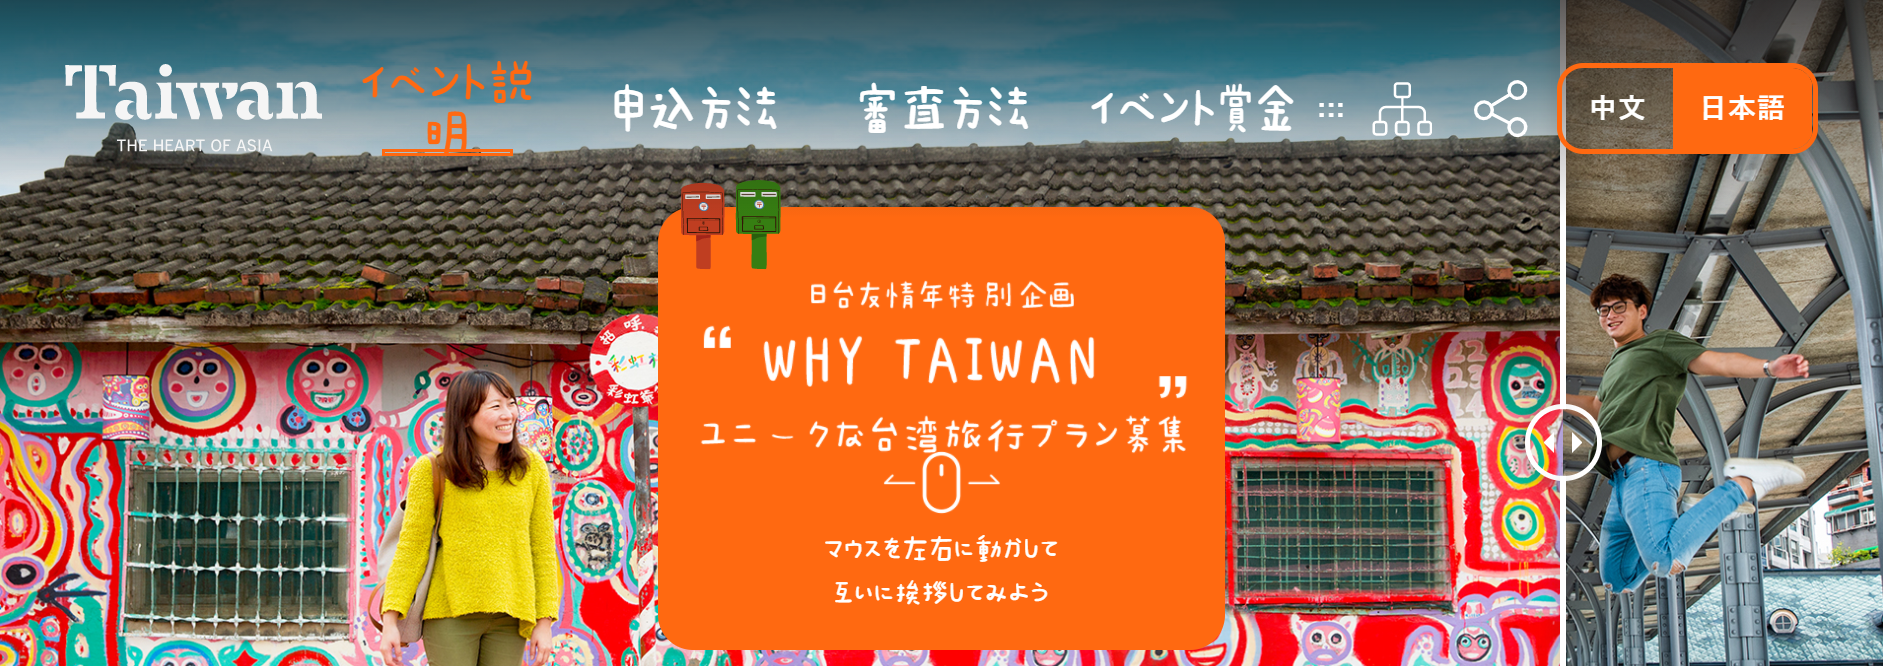 ナルワンアワー（金曜日） - 2021-04-16_交通部観光局、ユニークな台湾旅行プランを募集